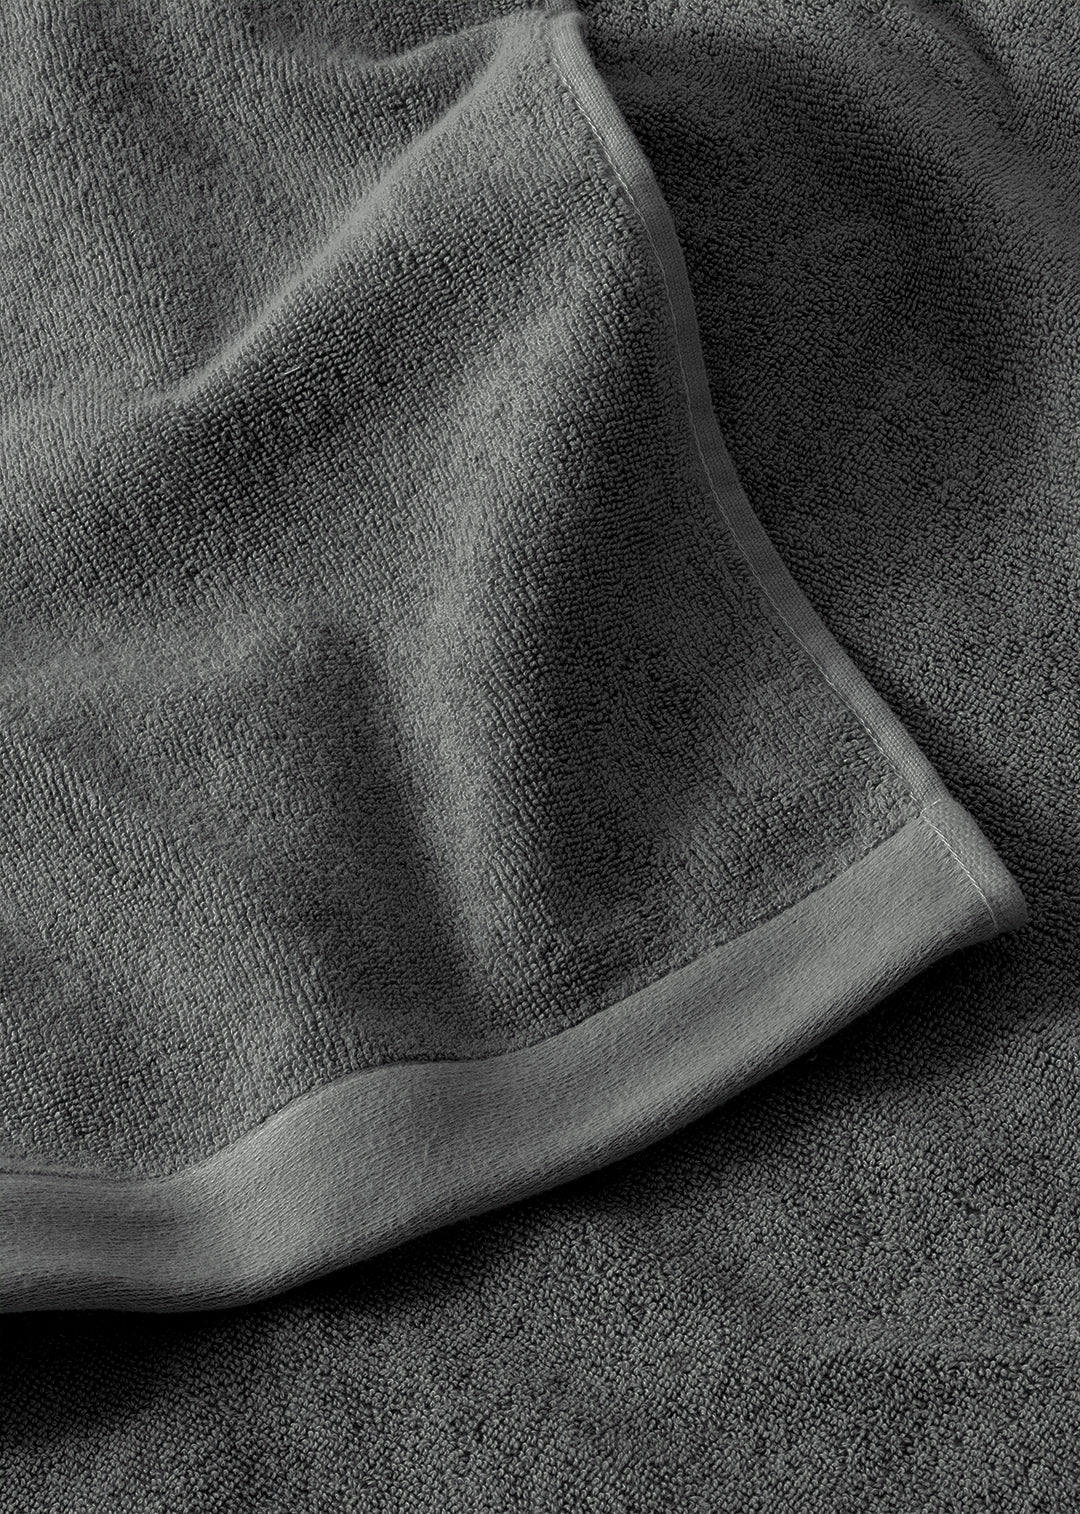 Handtuch Baumwolle Anthrazit 30 x 50 cm